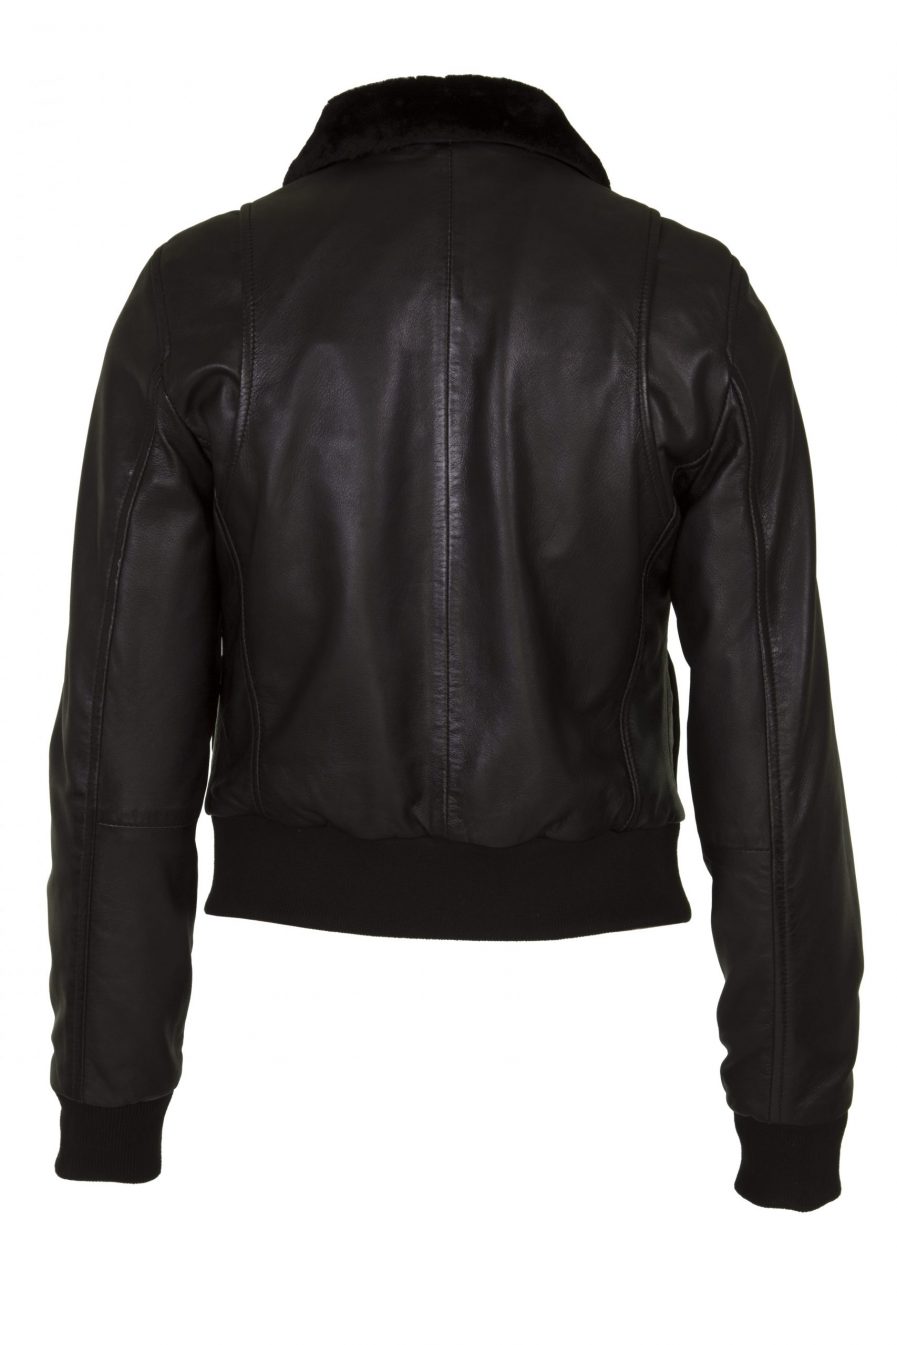 Women Real Leather Lamb Nappa Jacket Bomber Black - Helium Leather